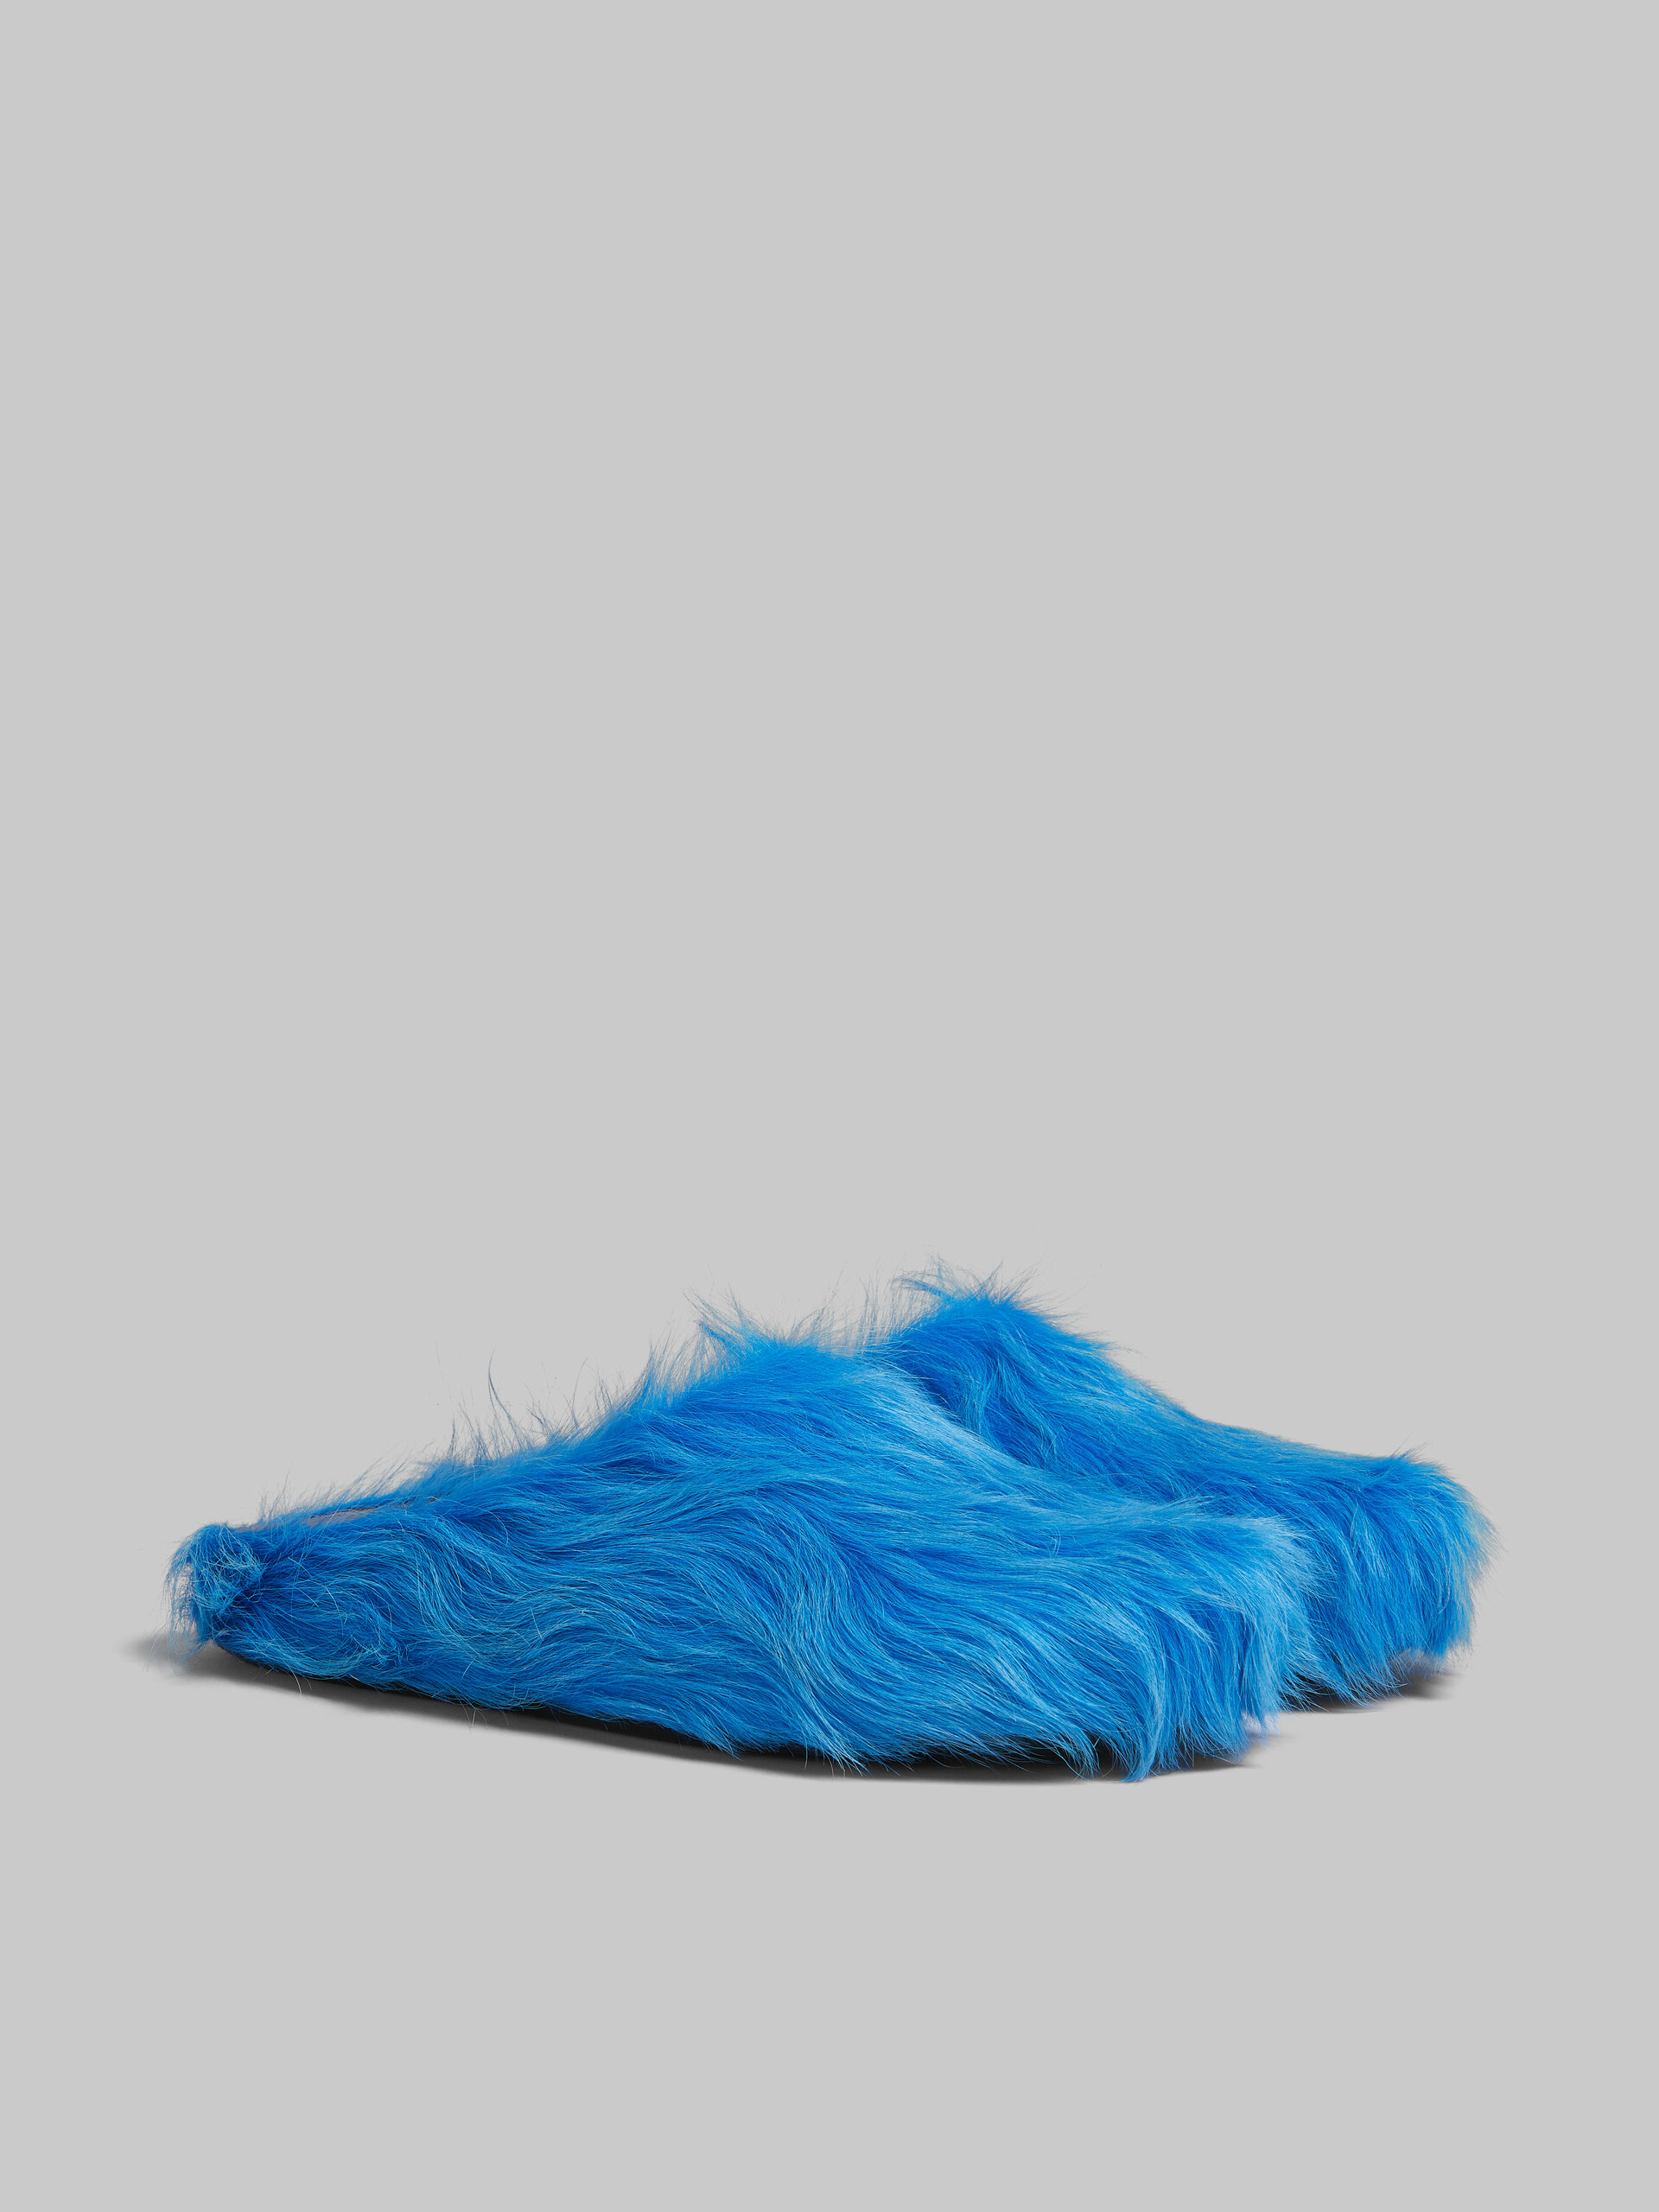 Hinten offener Loafer-Barfußschuh aus blauem Kalbsfell - Holzschuhe - Image 2